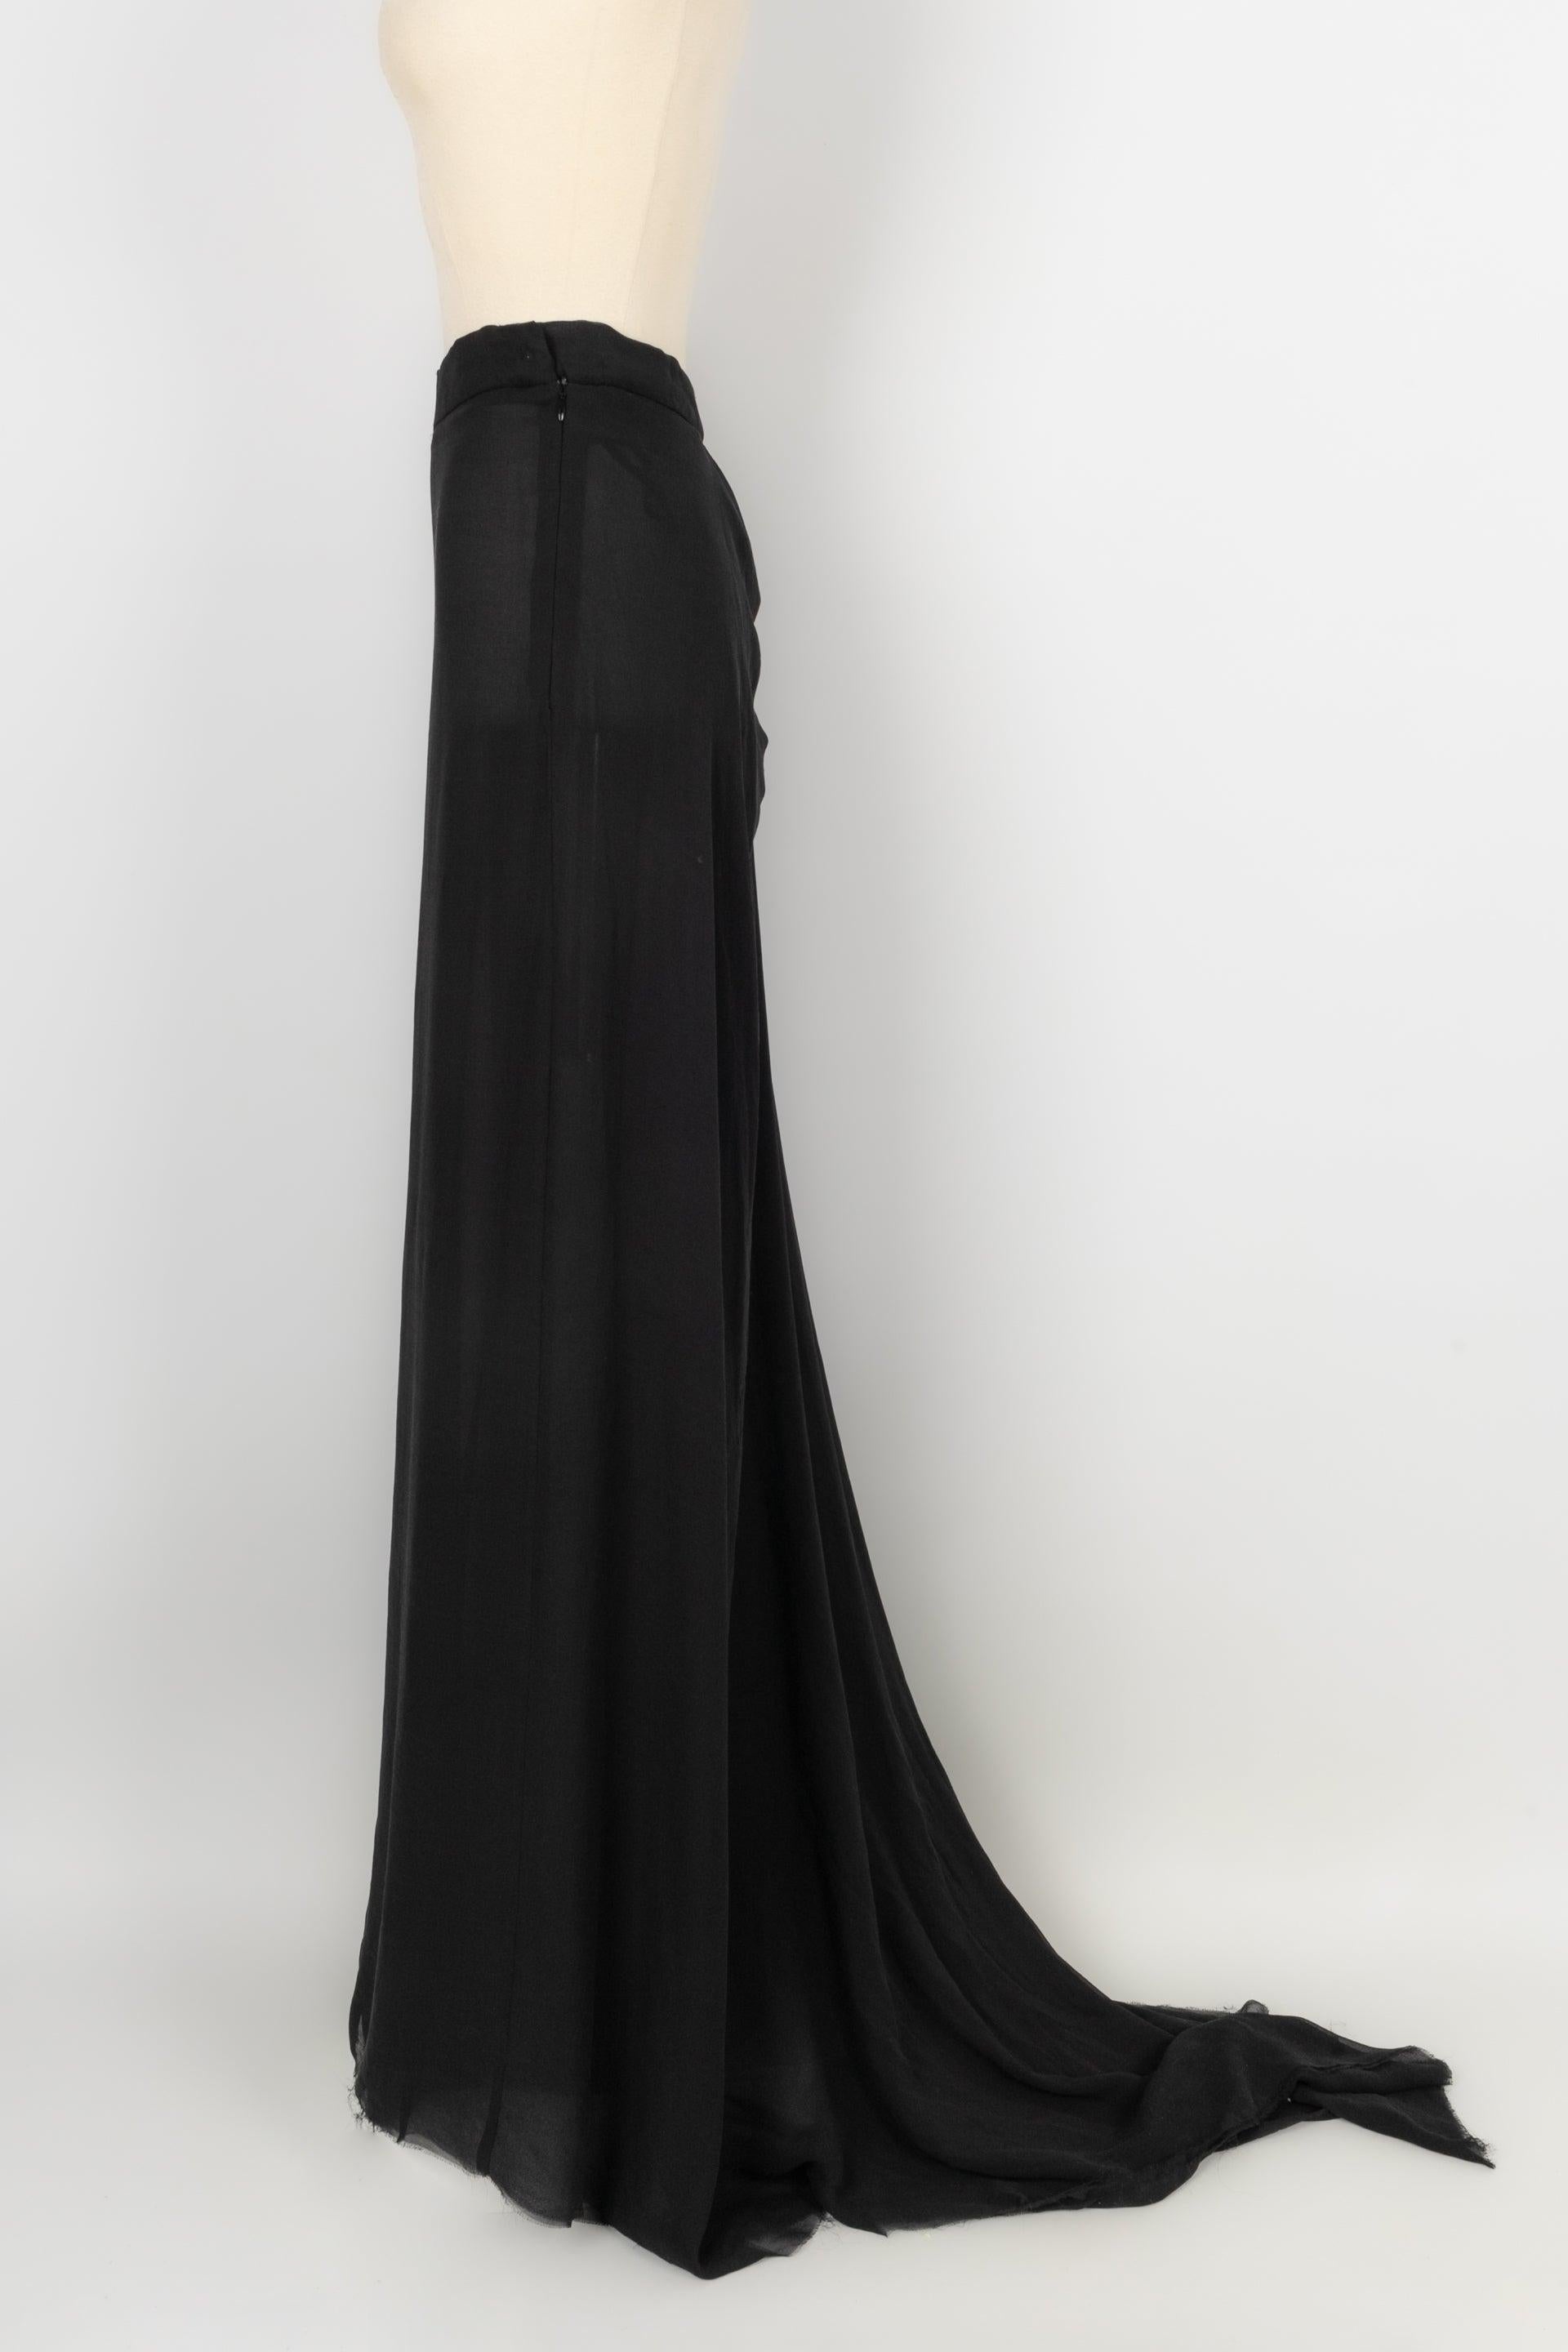 Vivienne Westwood - (Fabriqué en Italie) Jupe longue asymétrique en soie noire. Taille 44FR.

Informations complémentaires :
Condit : Très bon état.
Dimensions : Taille : 40 cm
Longueur : de 120 cm à 170 cm (environ)

Référence du vendeur : FJ9
